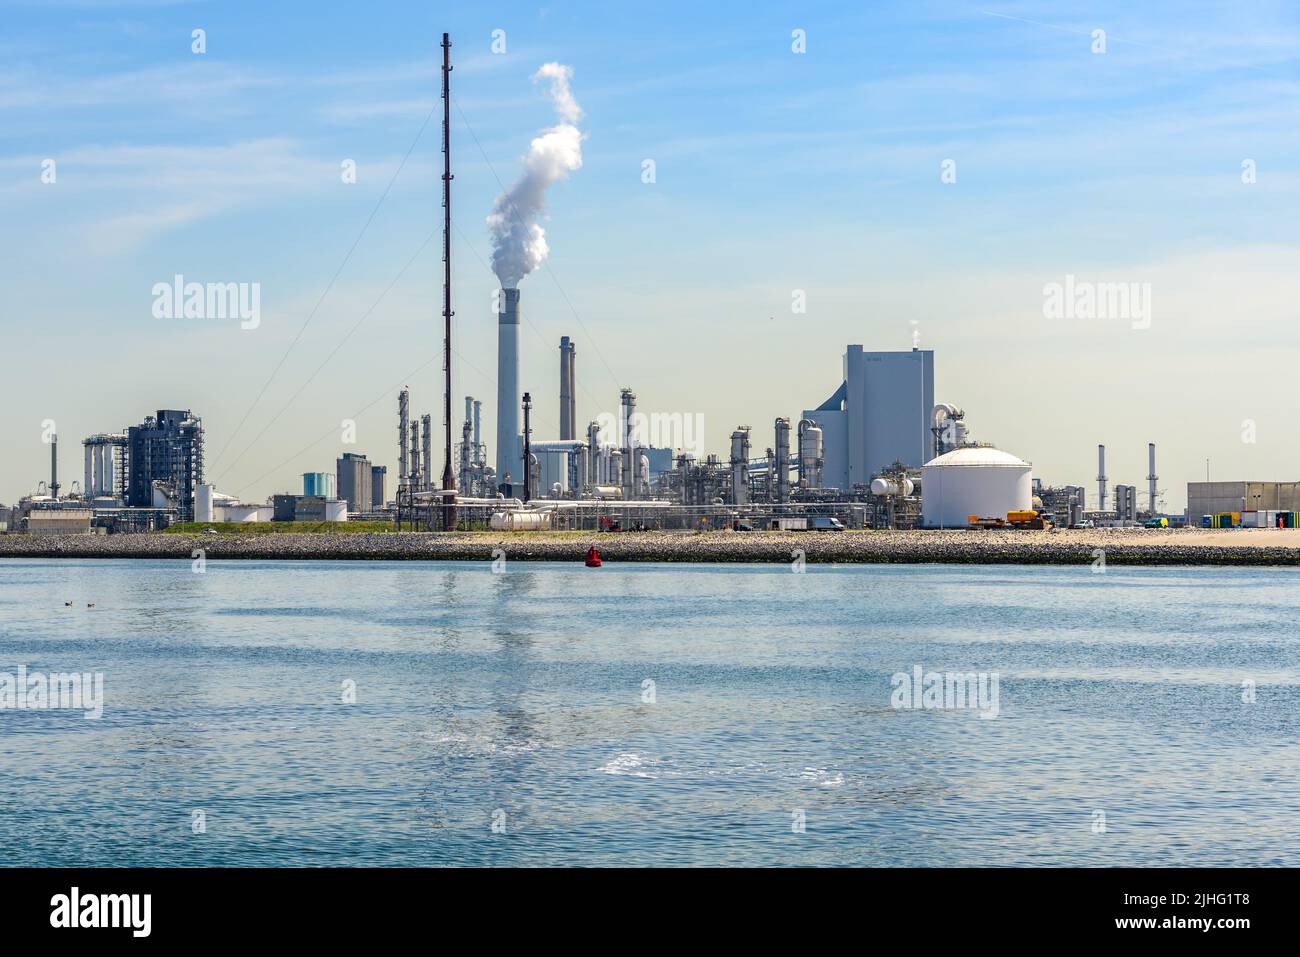 Vista de una refinería de petróleo en un soleado día de verano. Foto de stock